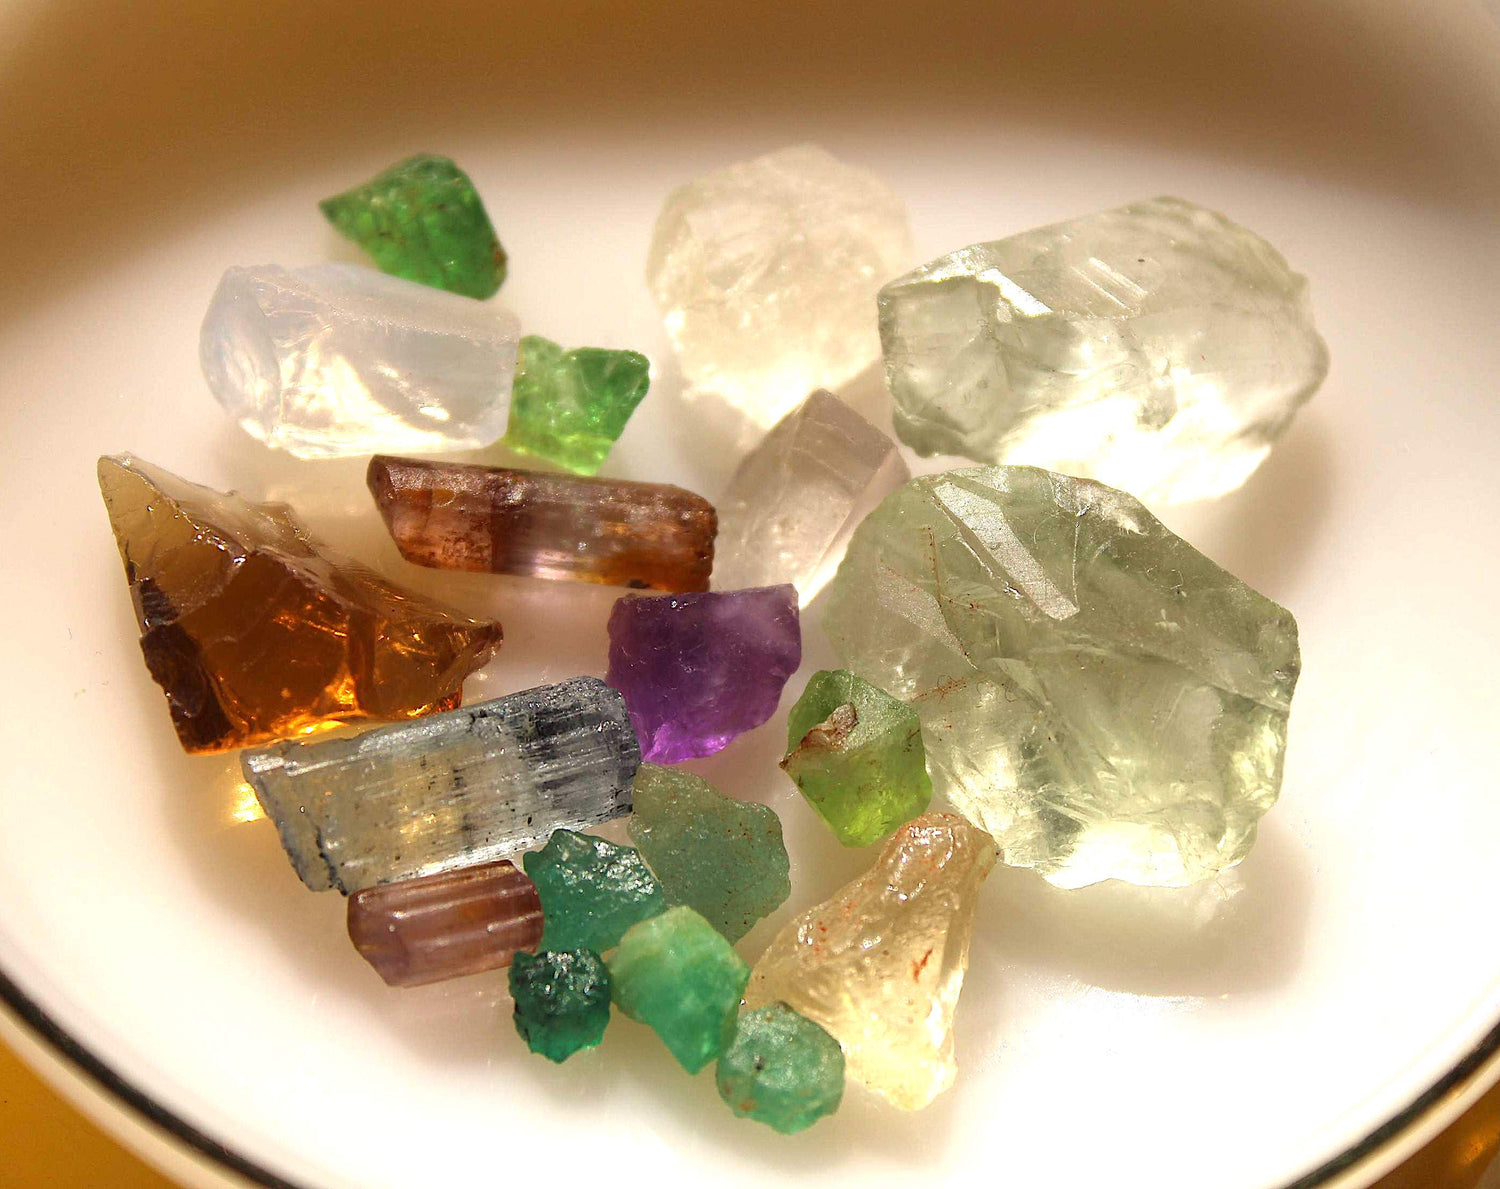 126 carats Facet grade Mixed Stones Prasiolite, Emeralds, citrine, hackmanite, scapolite, aquamarine, tsavoritea, Lavandar